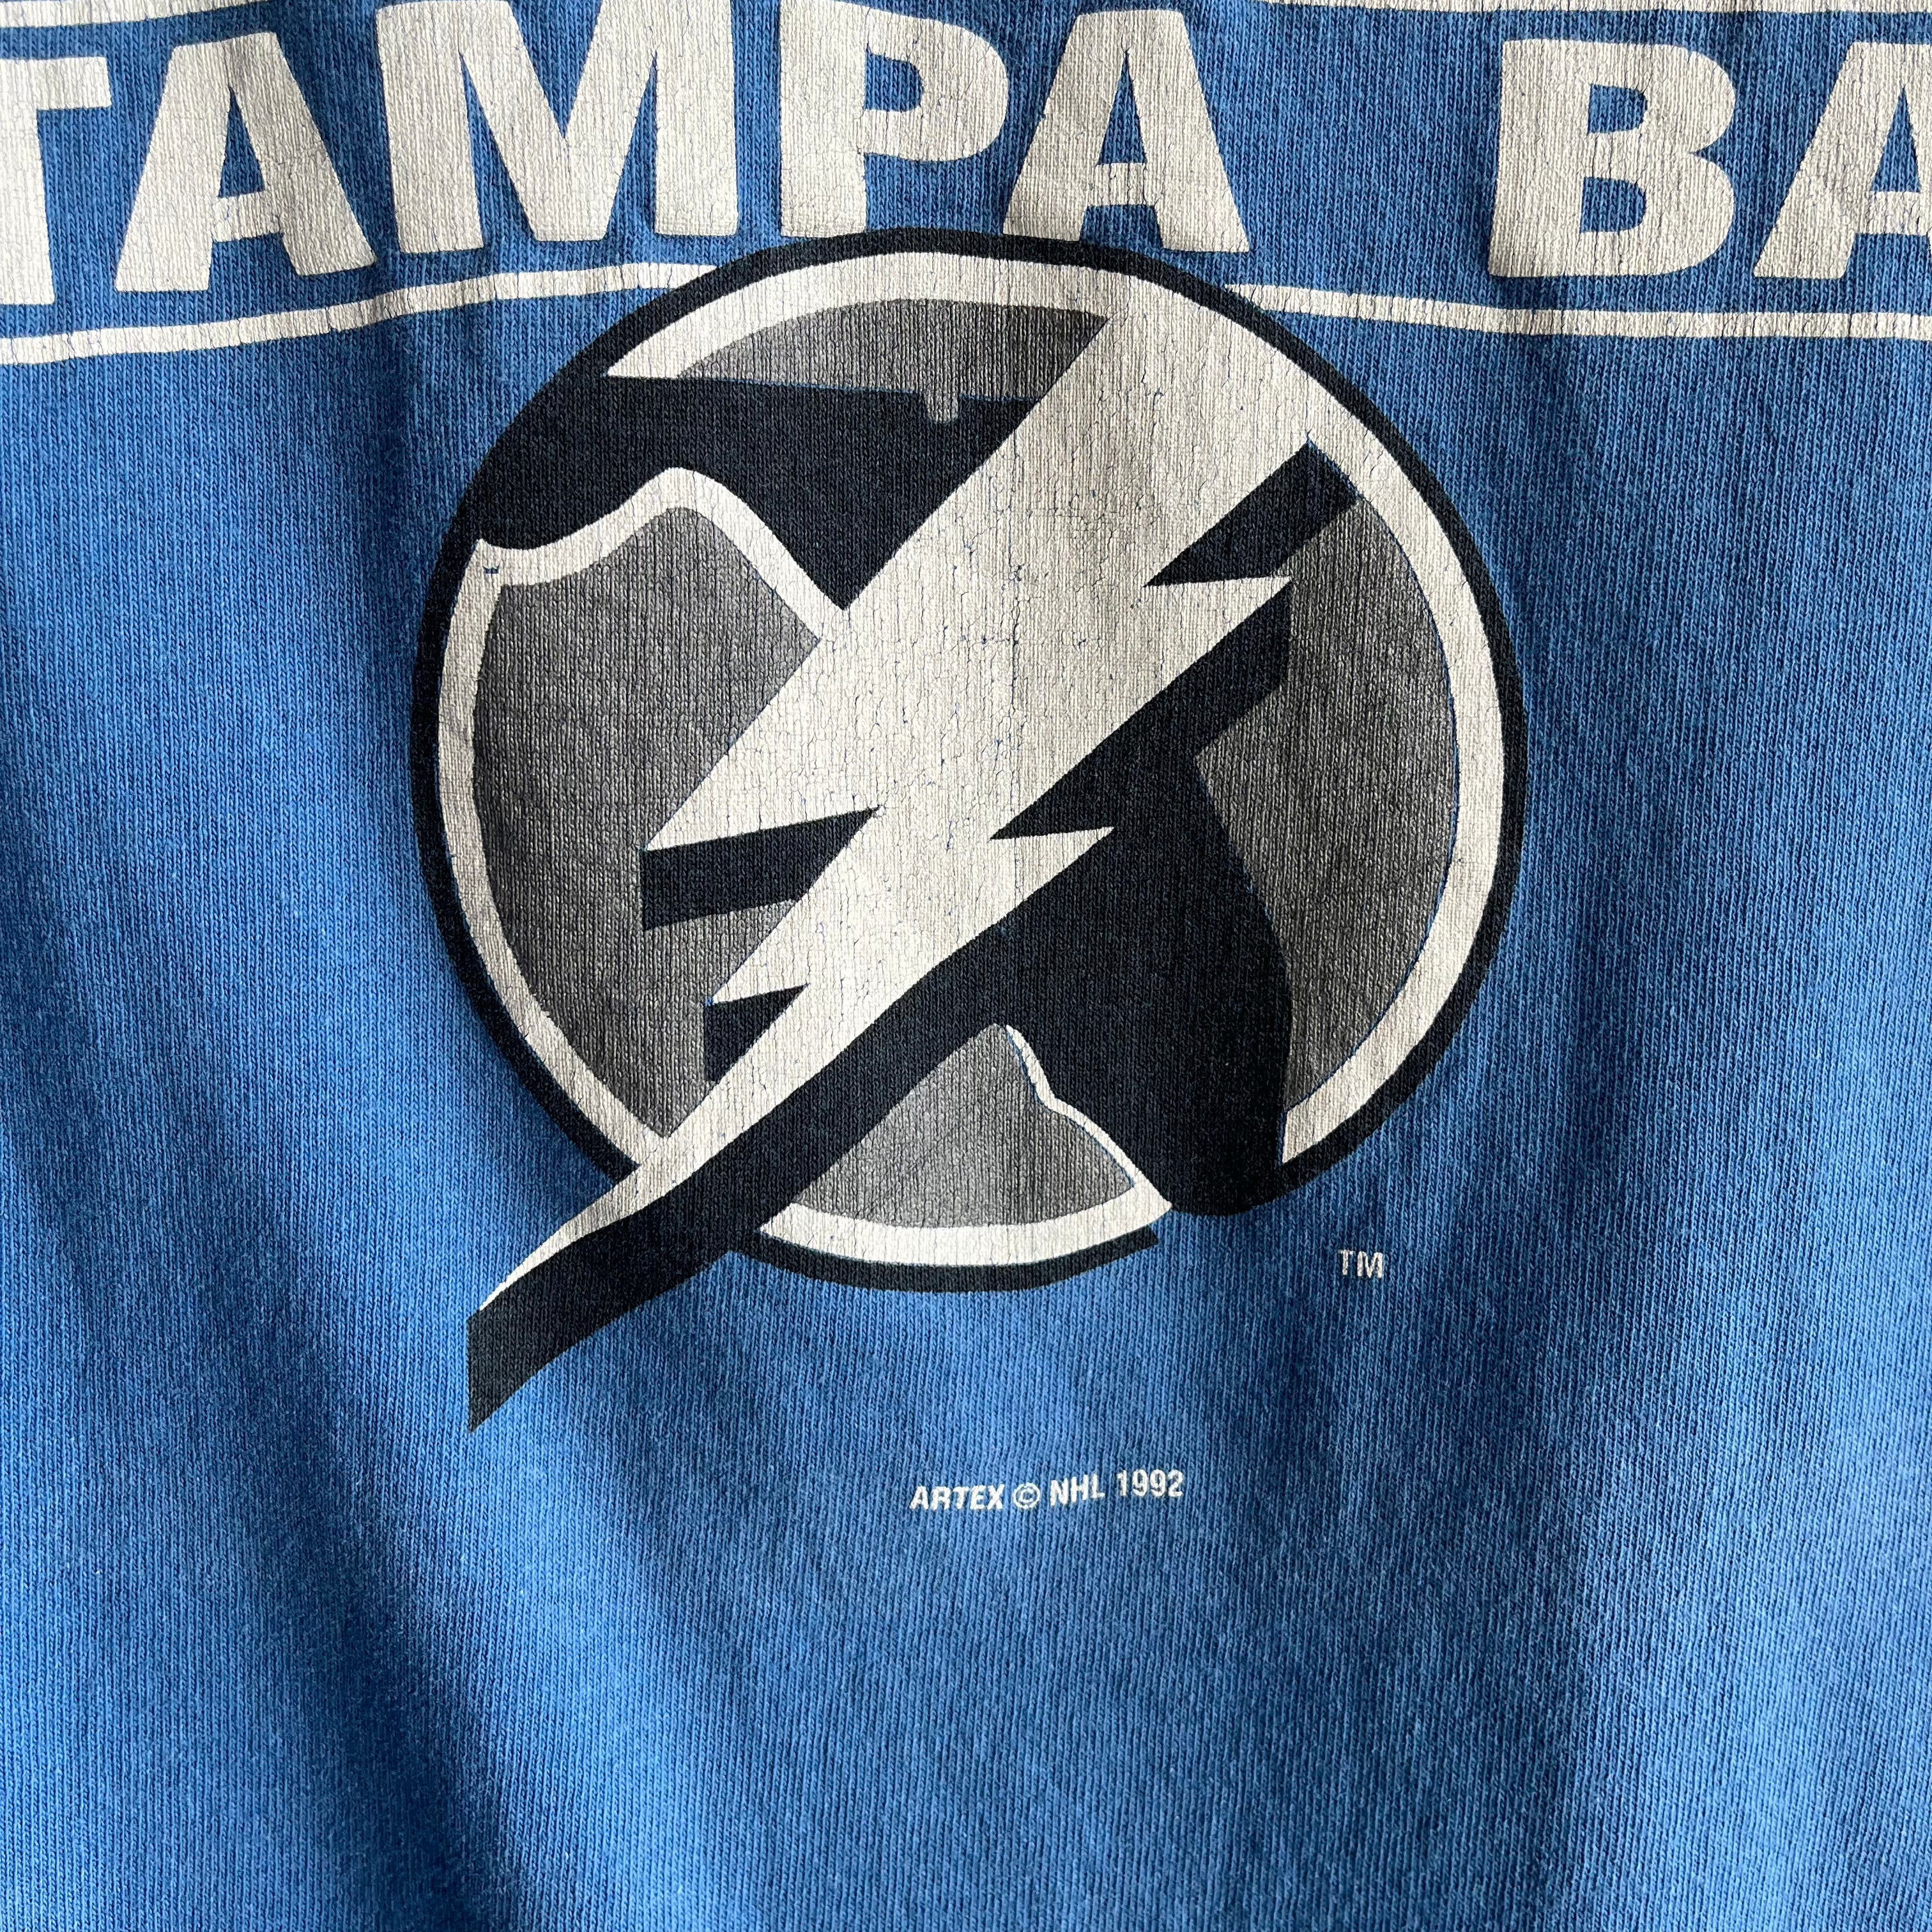 Vintage Tampa Bay Lightning Logo T shirt